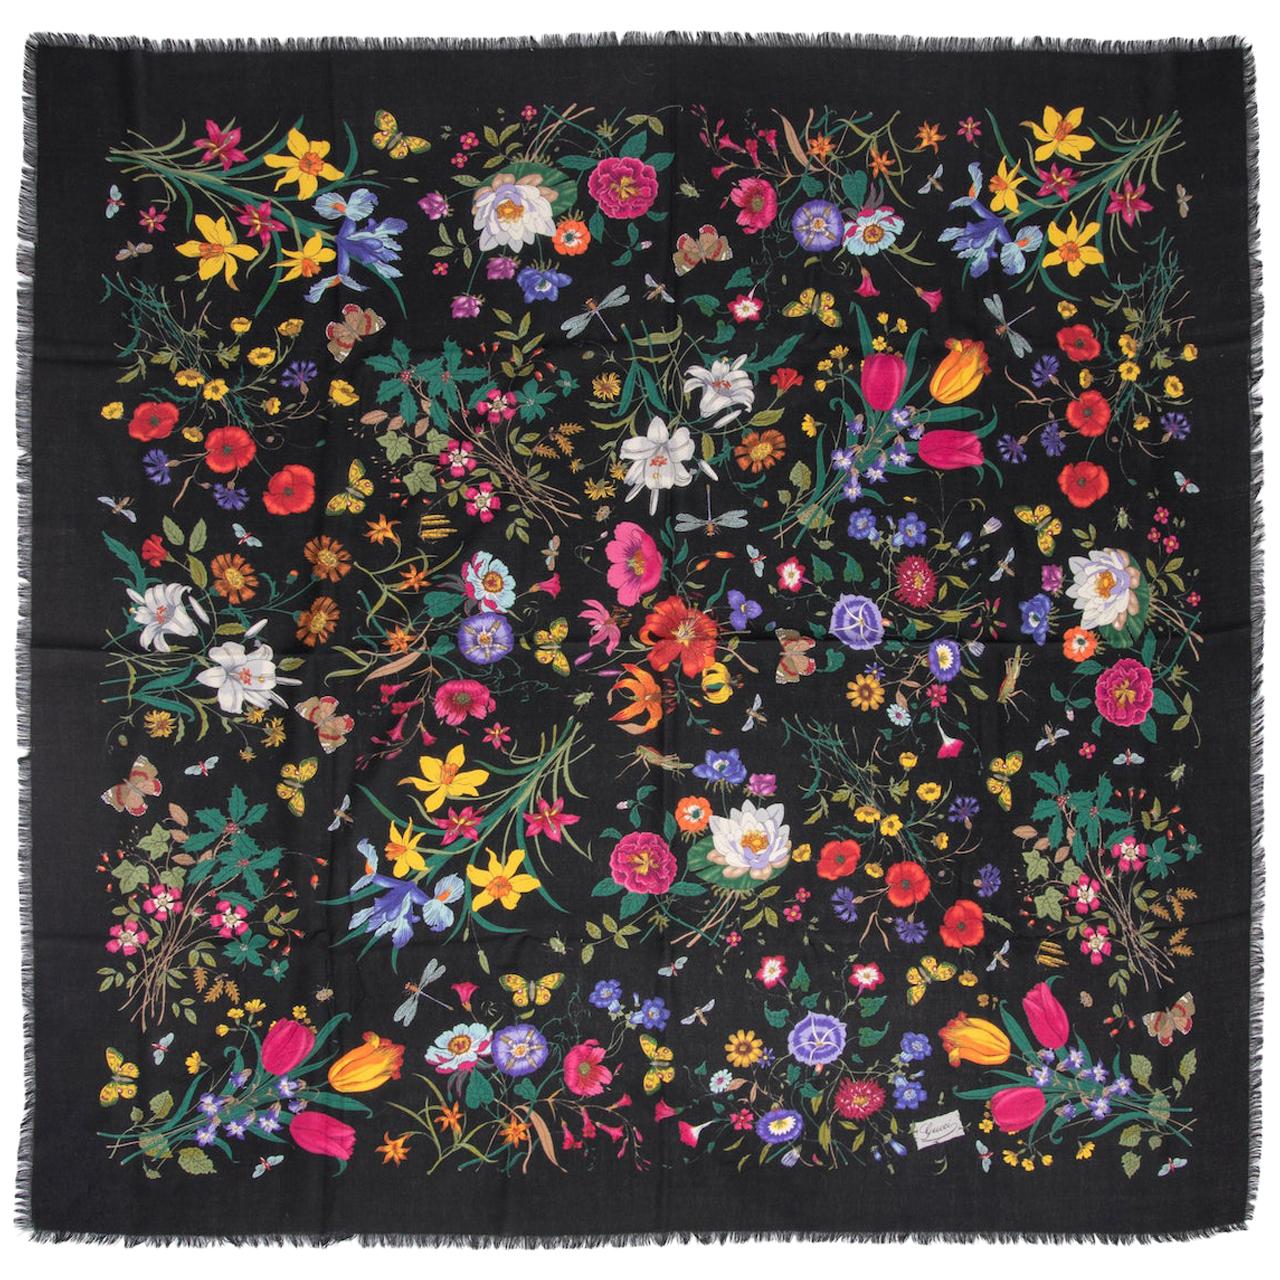 GUCCI Flora Vittorio Accornero Huge Multi Colored Floral Print Black Wool Scarf